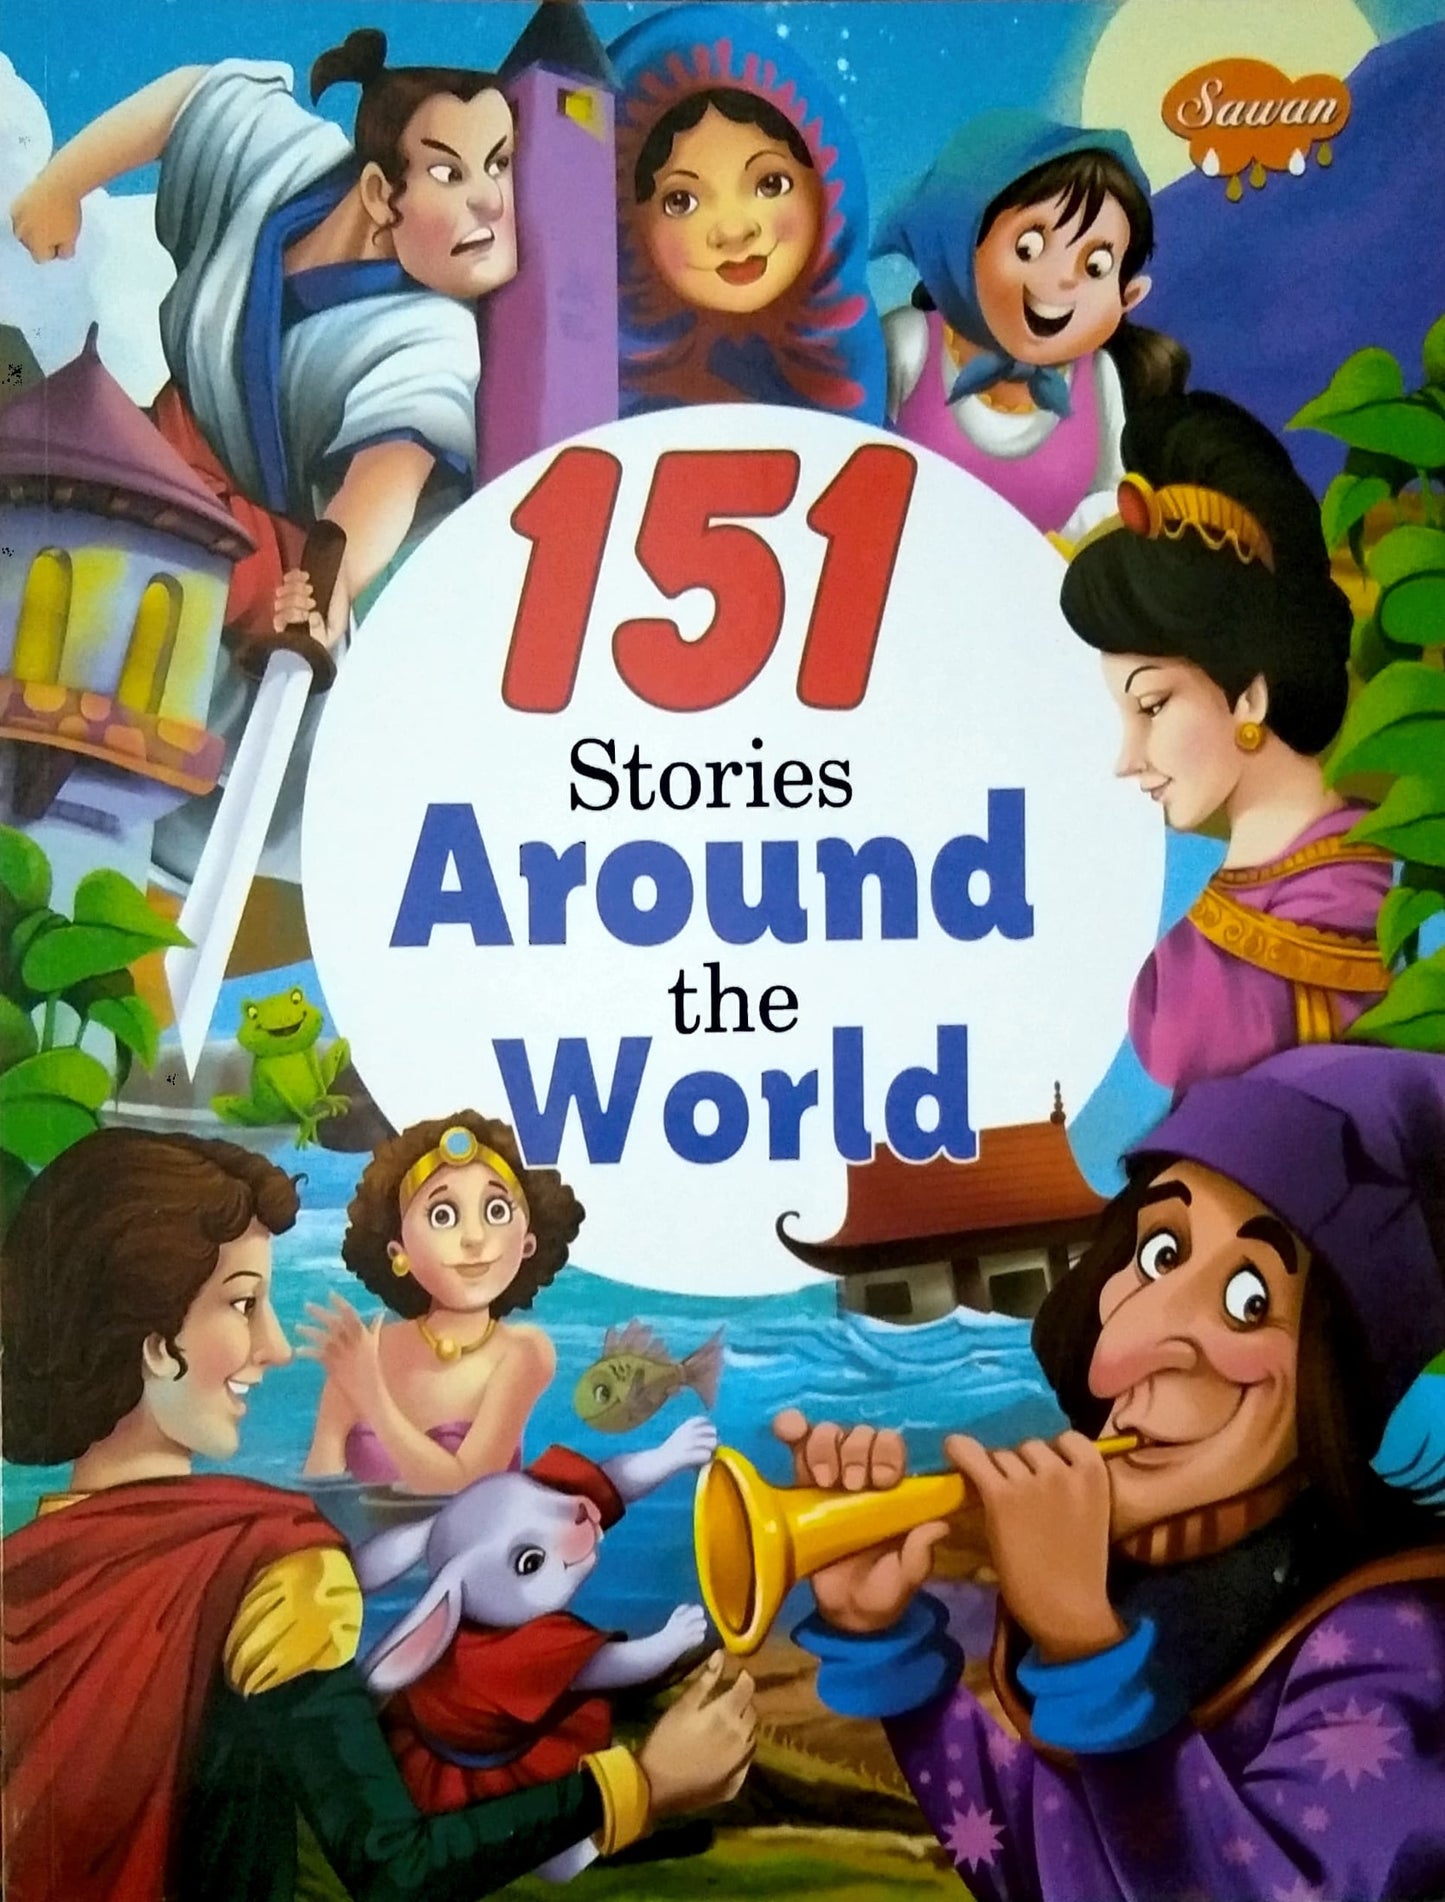 151 Stories Around the World